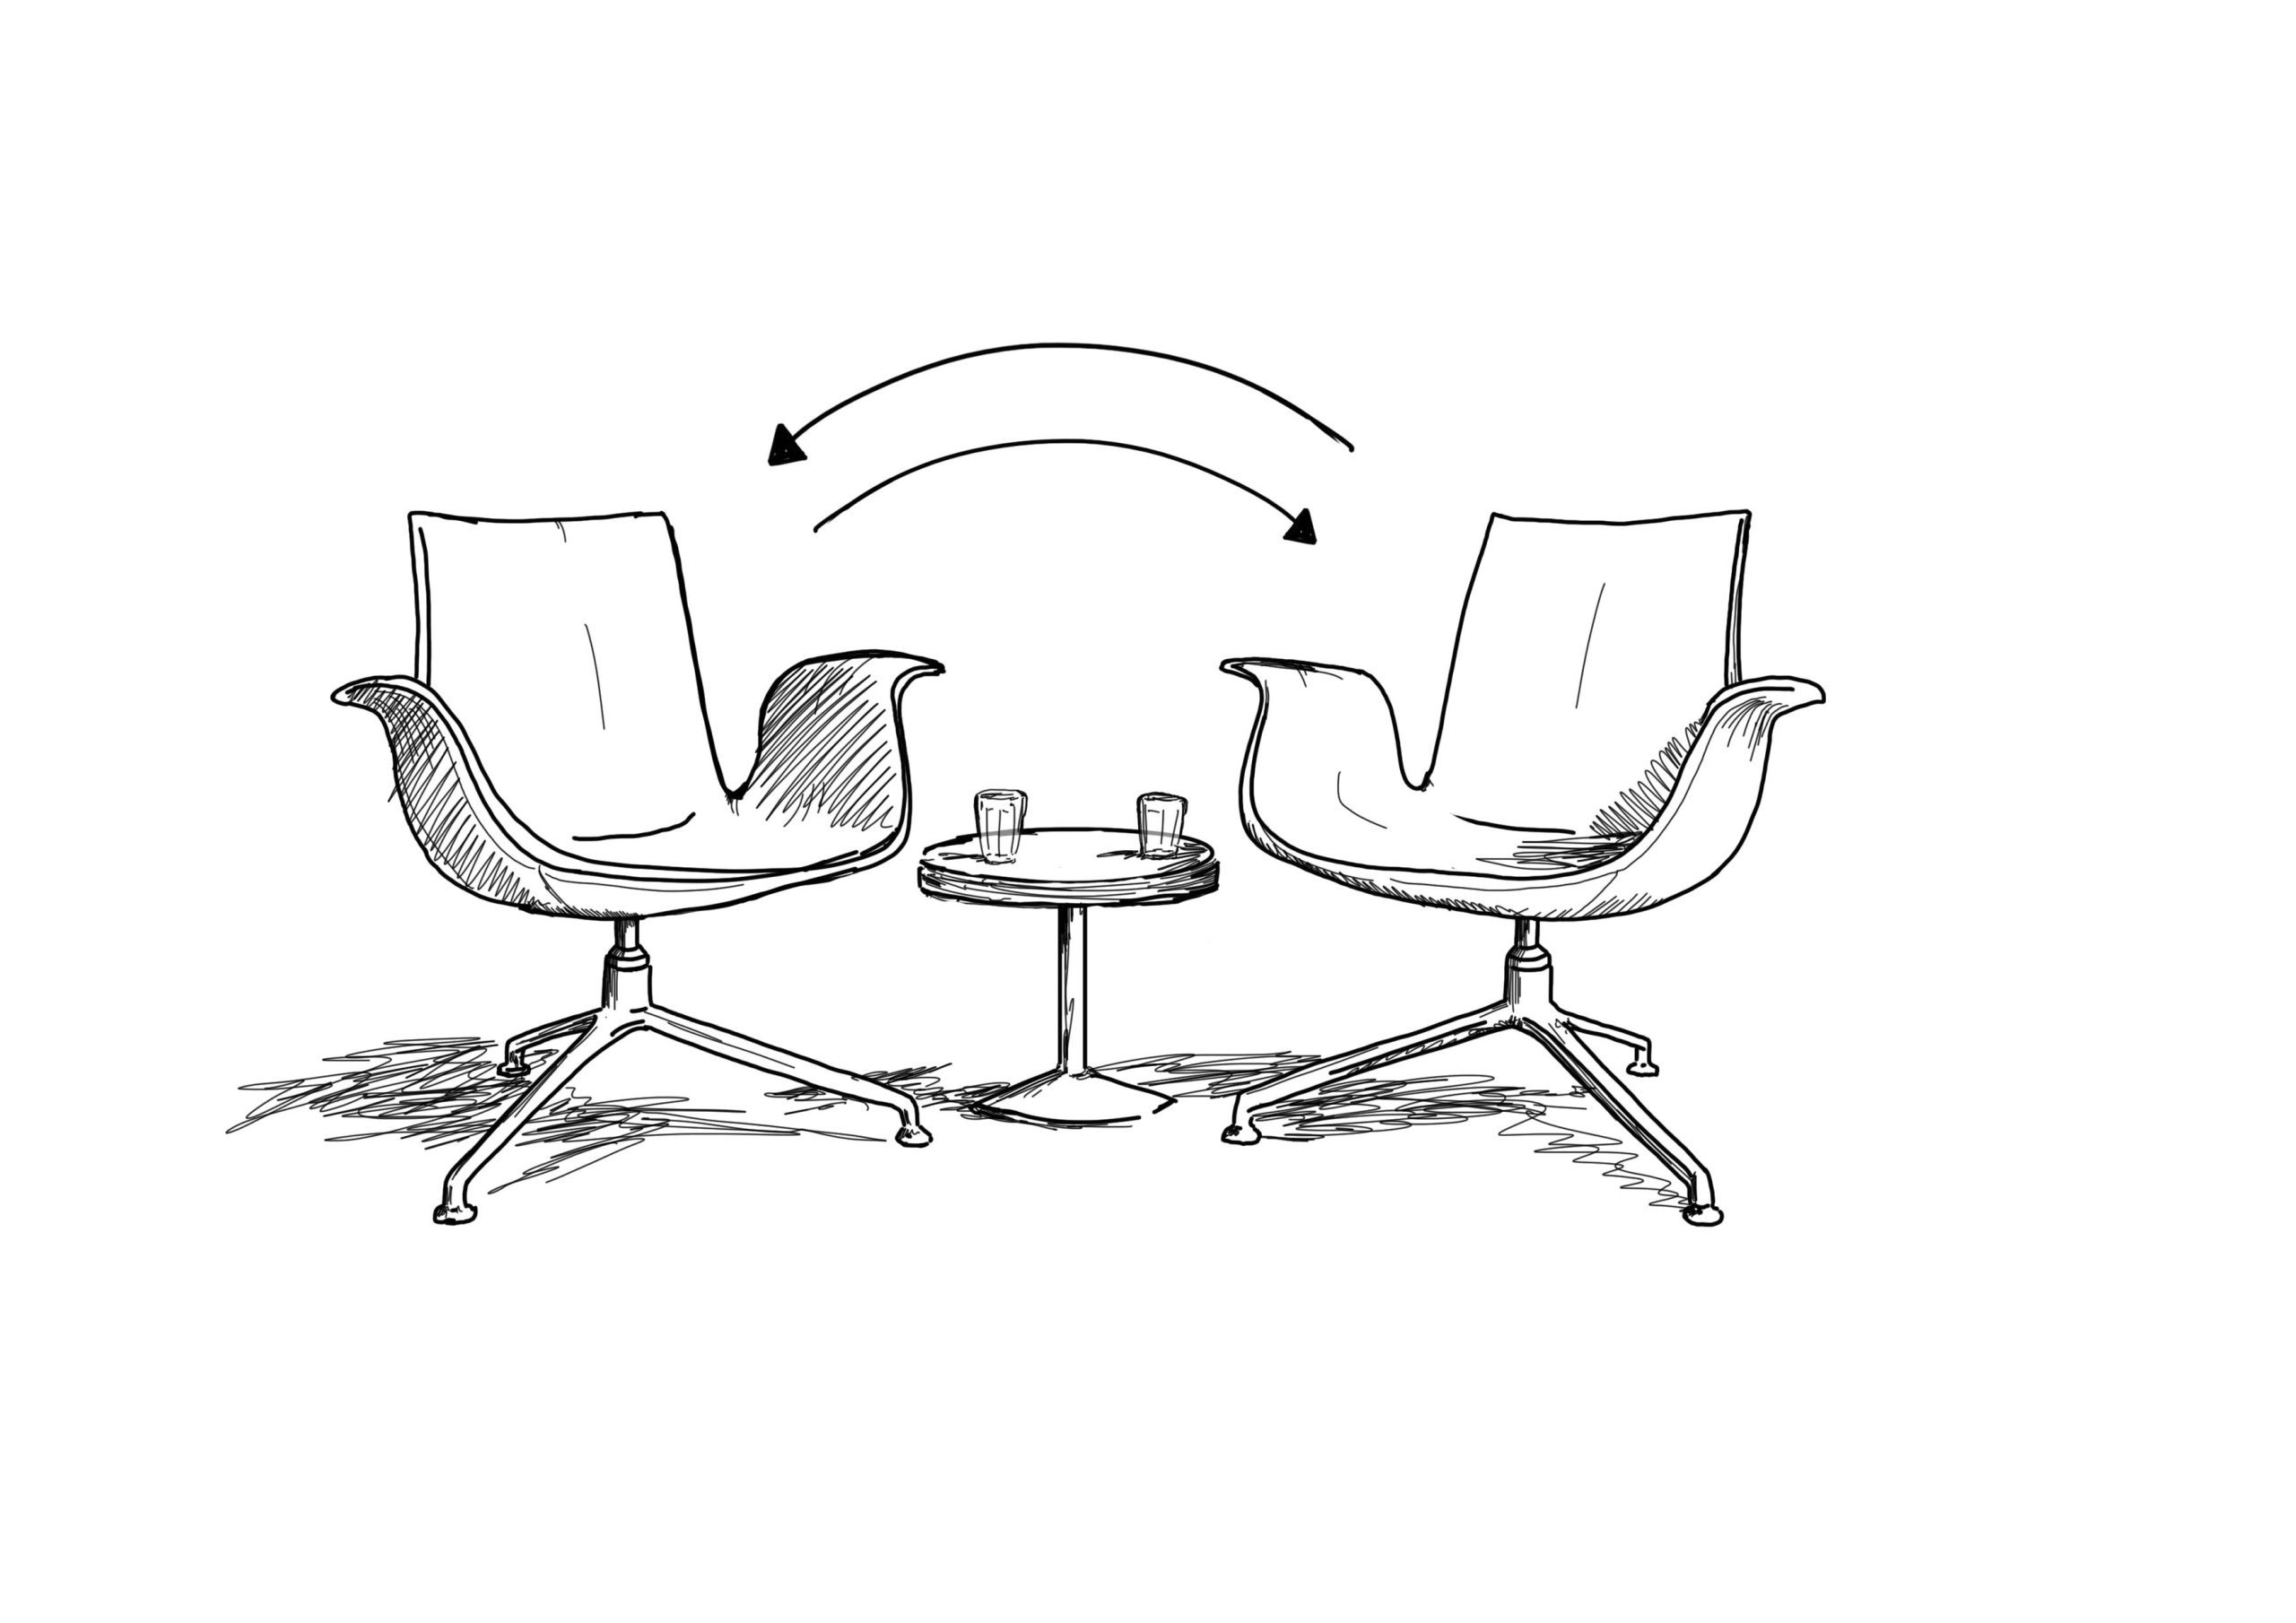 Zeichnung zweier Stühle und ein kleiner Beistelltisch zum Coaching nebeneinander gestellt.